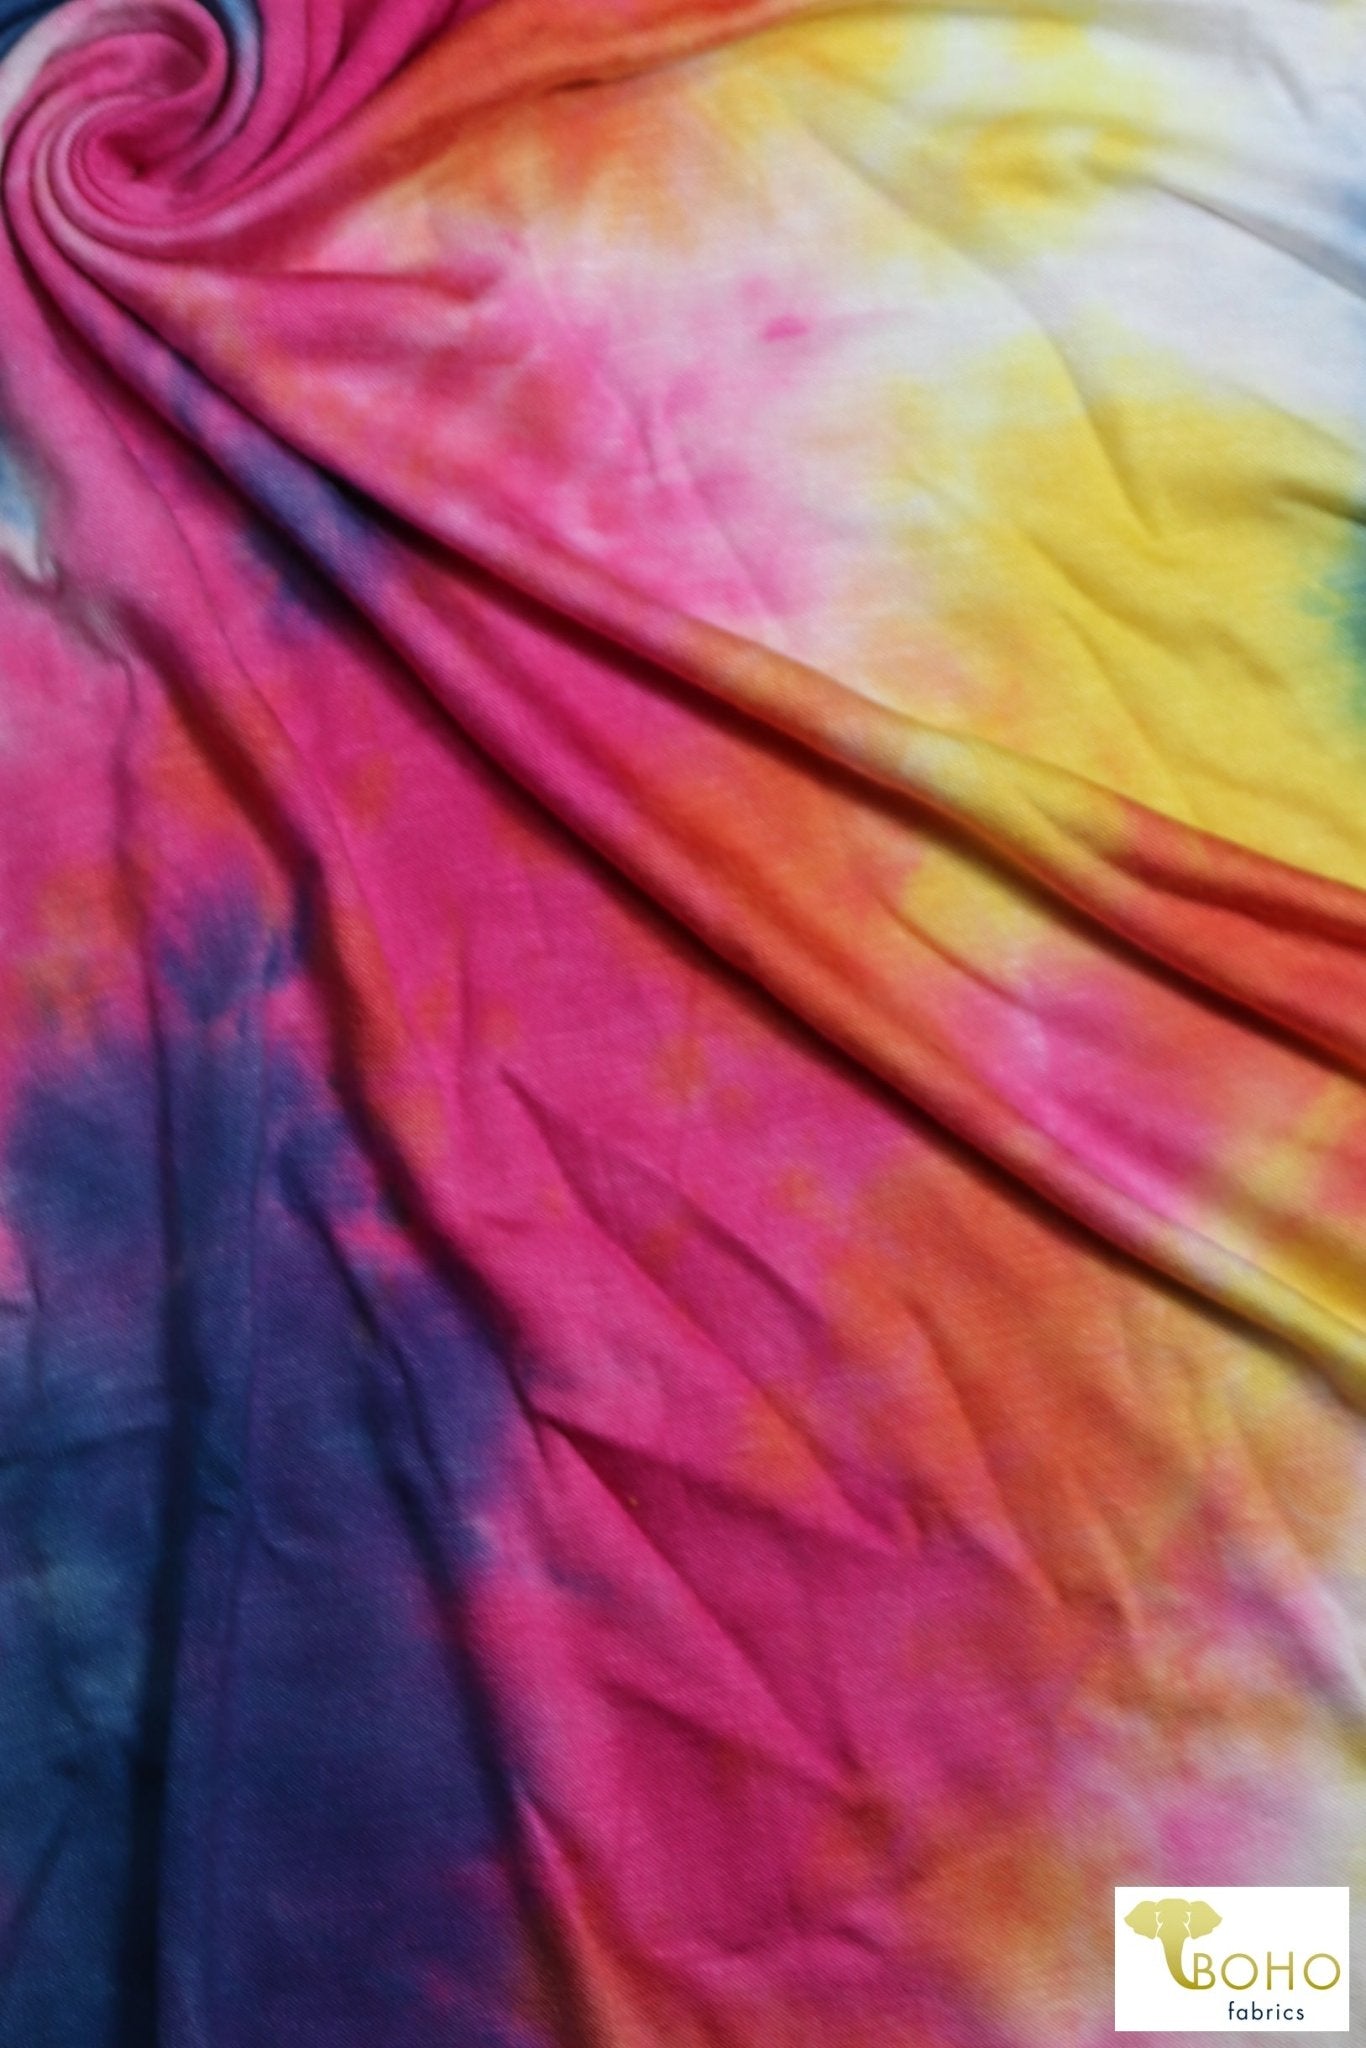 Rainbow Burst Tie Dye, Rayon Spandex. RJP-315 - Boho Fabrics